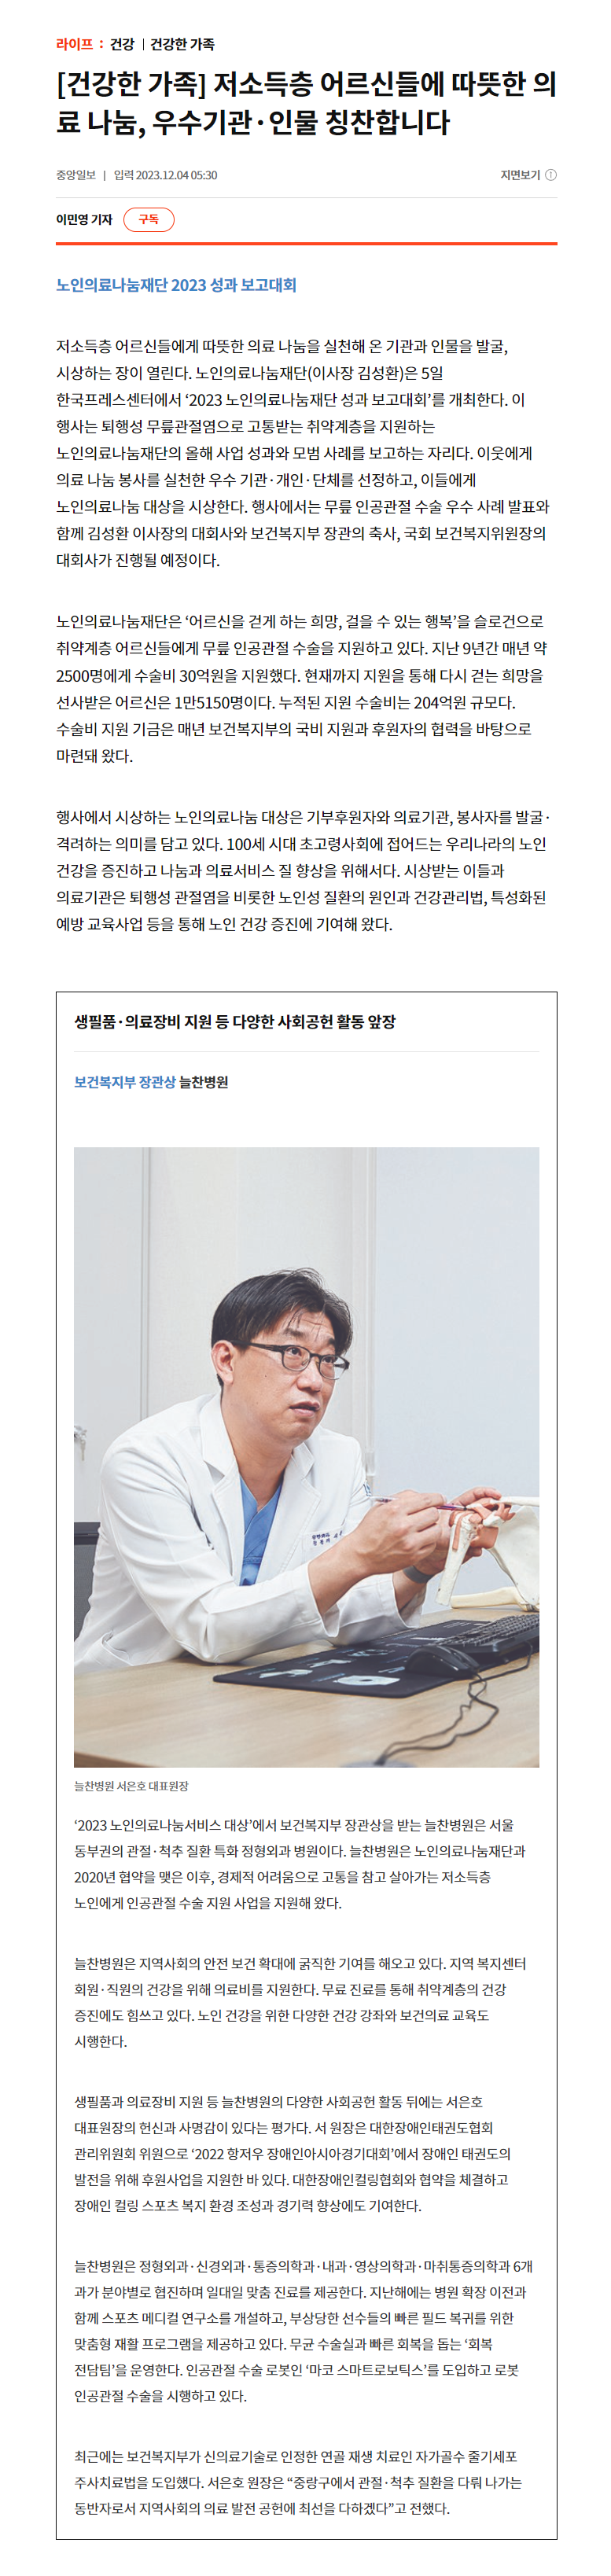 [중앙일보] 보건복지부 장관상 늘찬병원